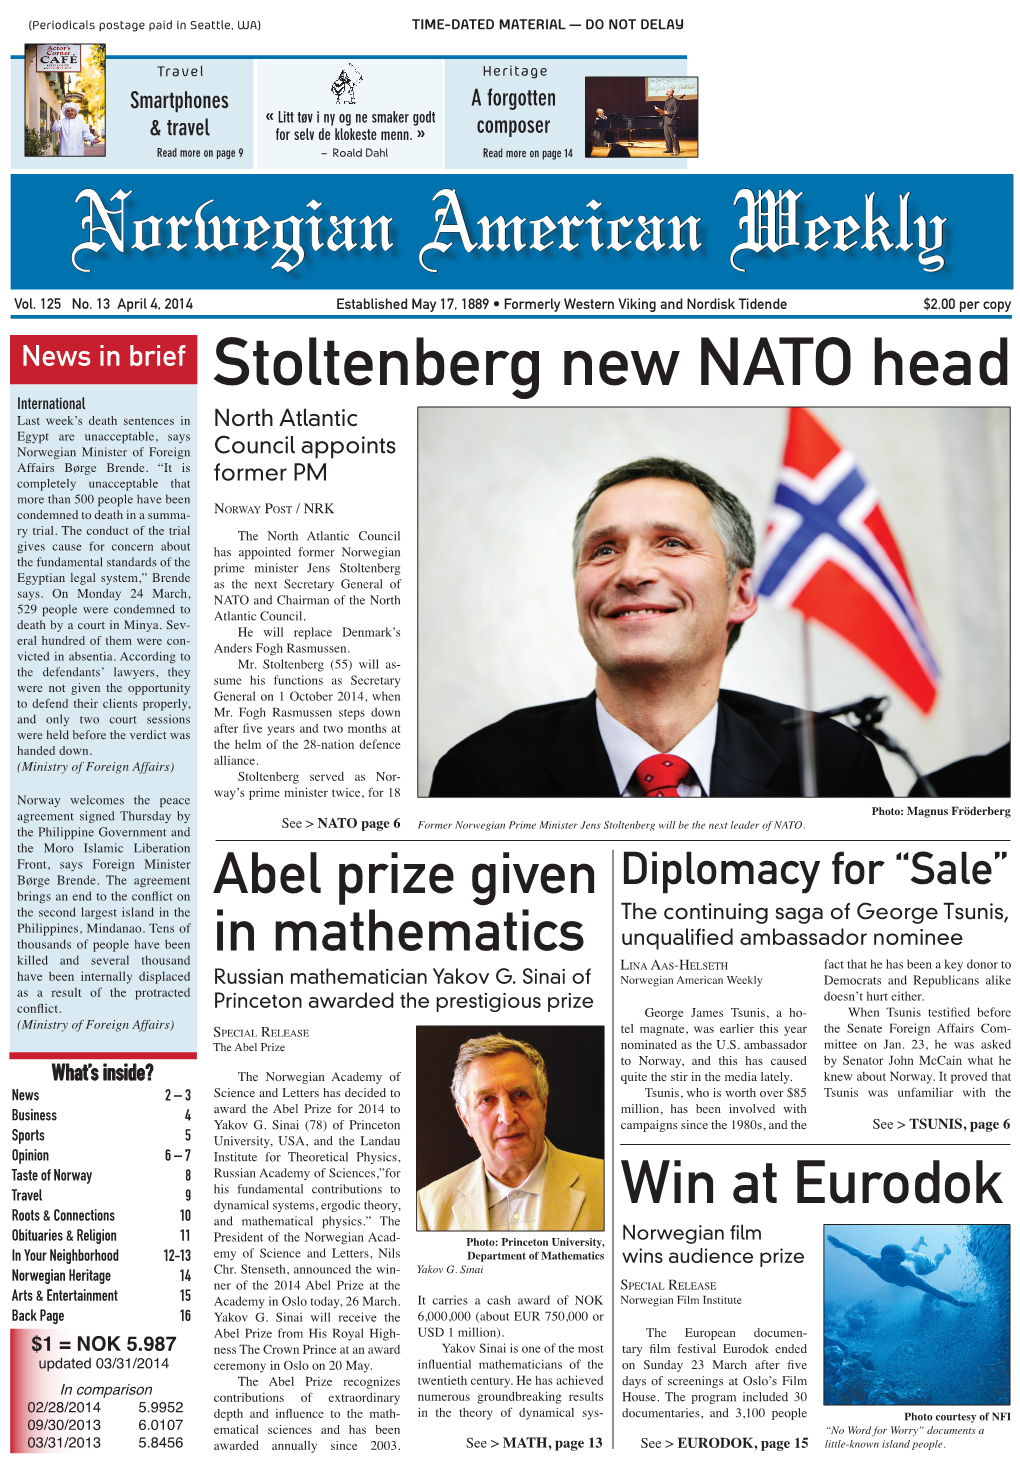 Stoltenberg New NATO Head